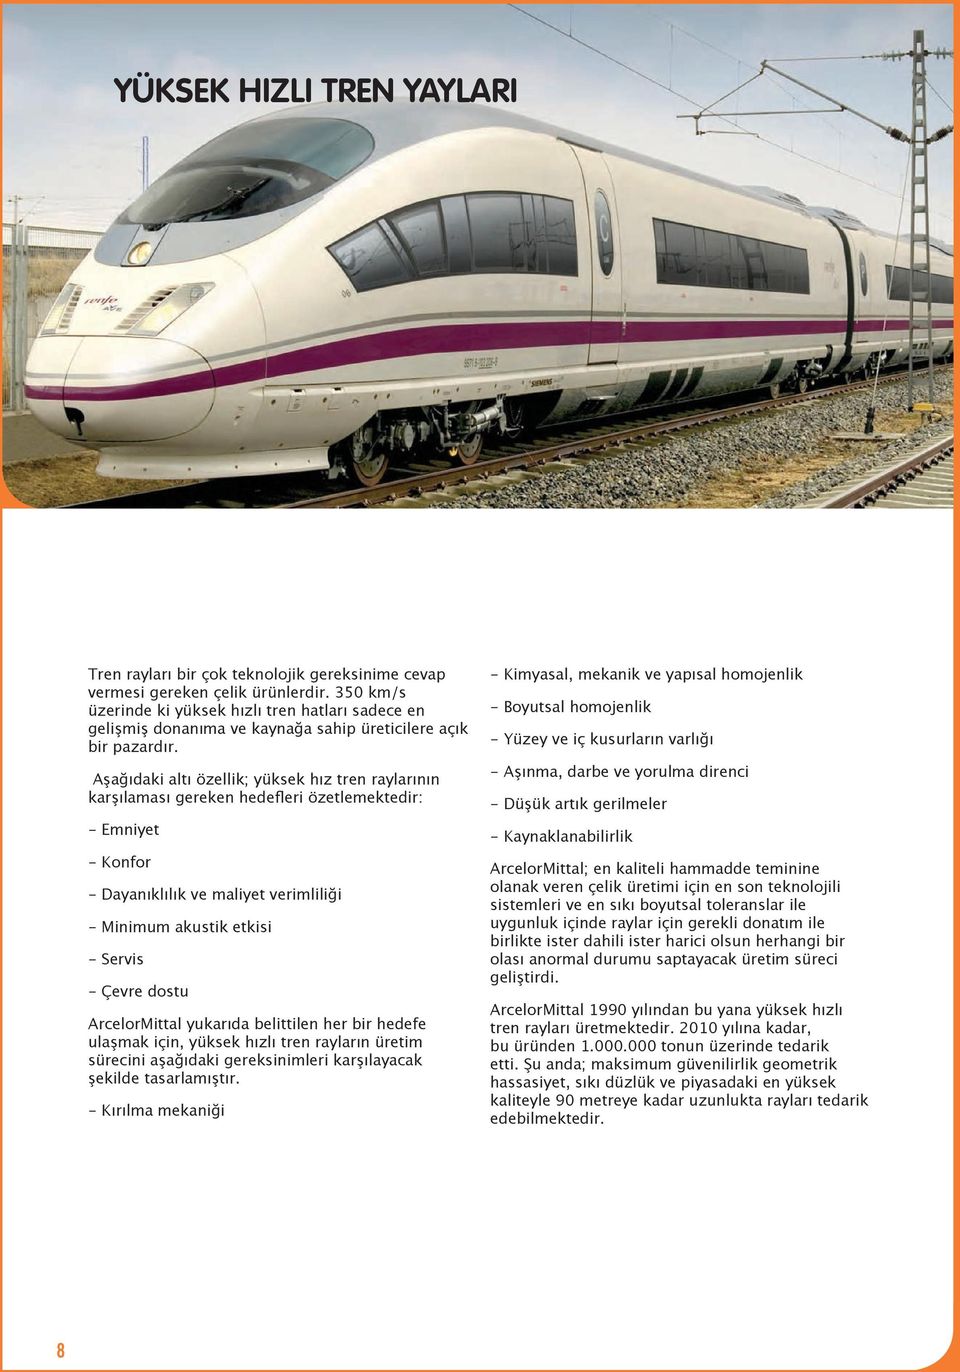 Aşağıdaki altı özellik; yüksek hız tren raylarının karşılaması gereken hedefleri özetlemektedir: - Emniyet - Konfor - Dayanıklılık ve maliyet verimliliği - Minimum akustik etkisi - Servis - Çevre